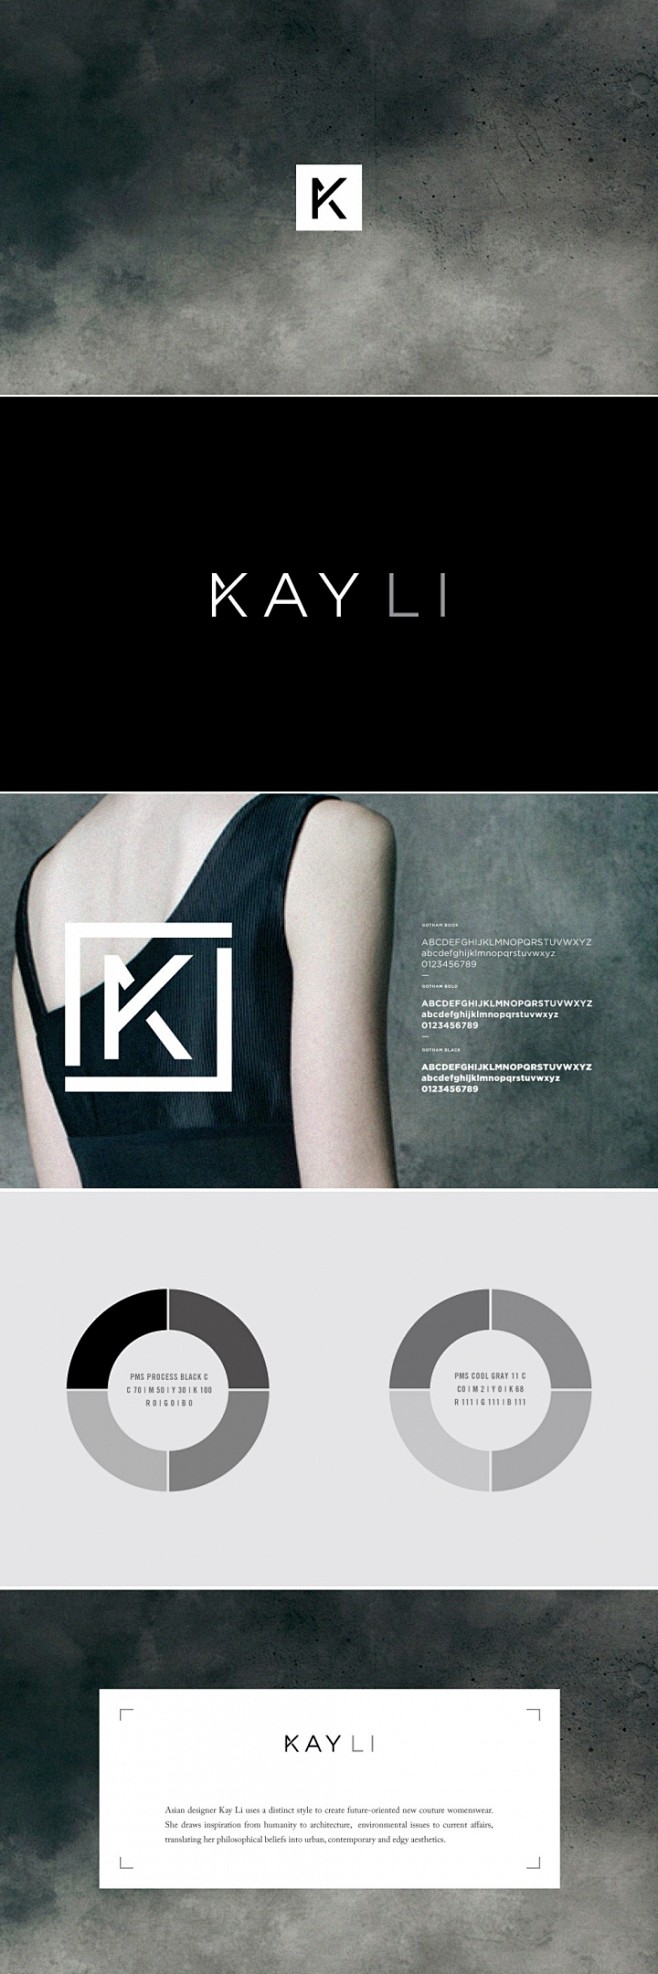 时装设计师Kay Li品牌形象设计 - ...